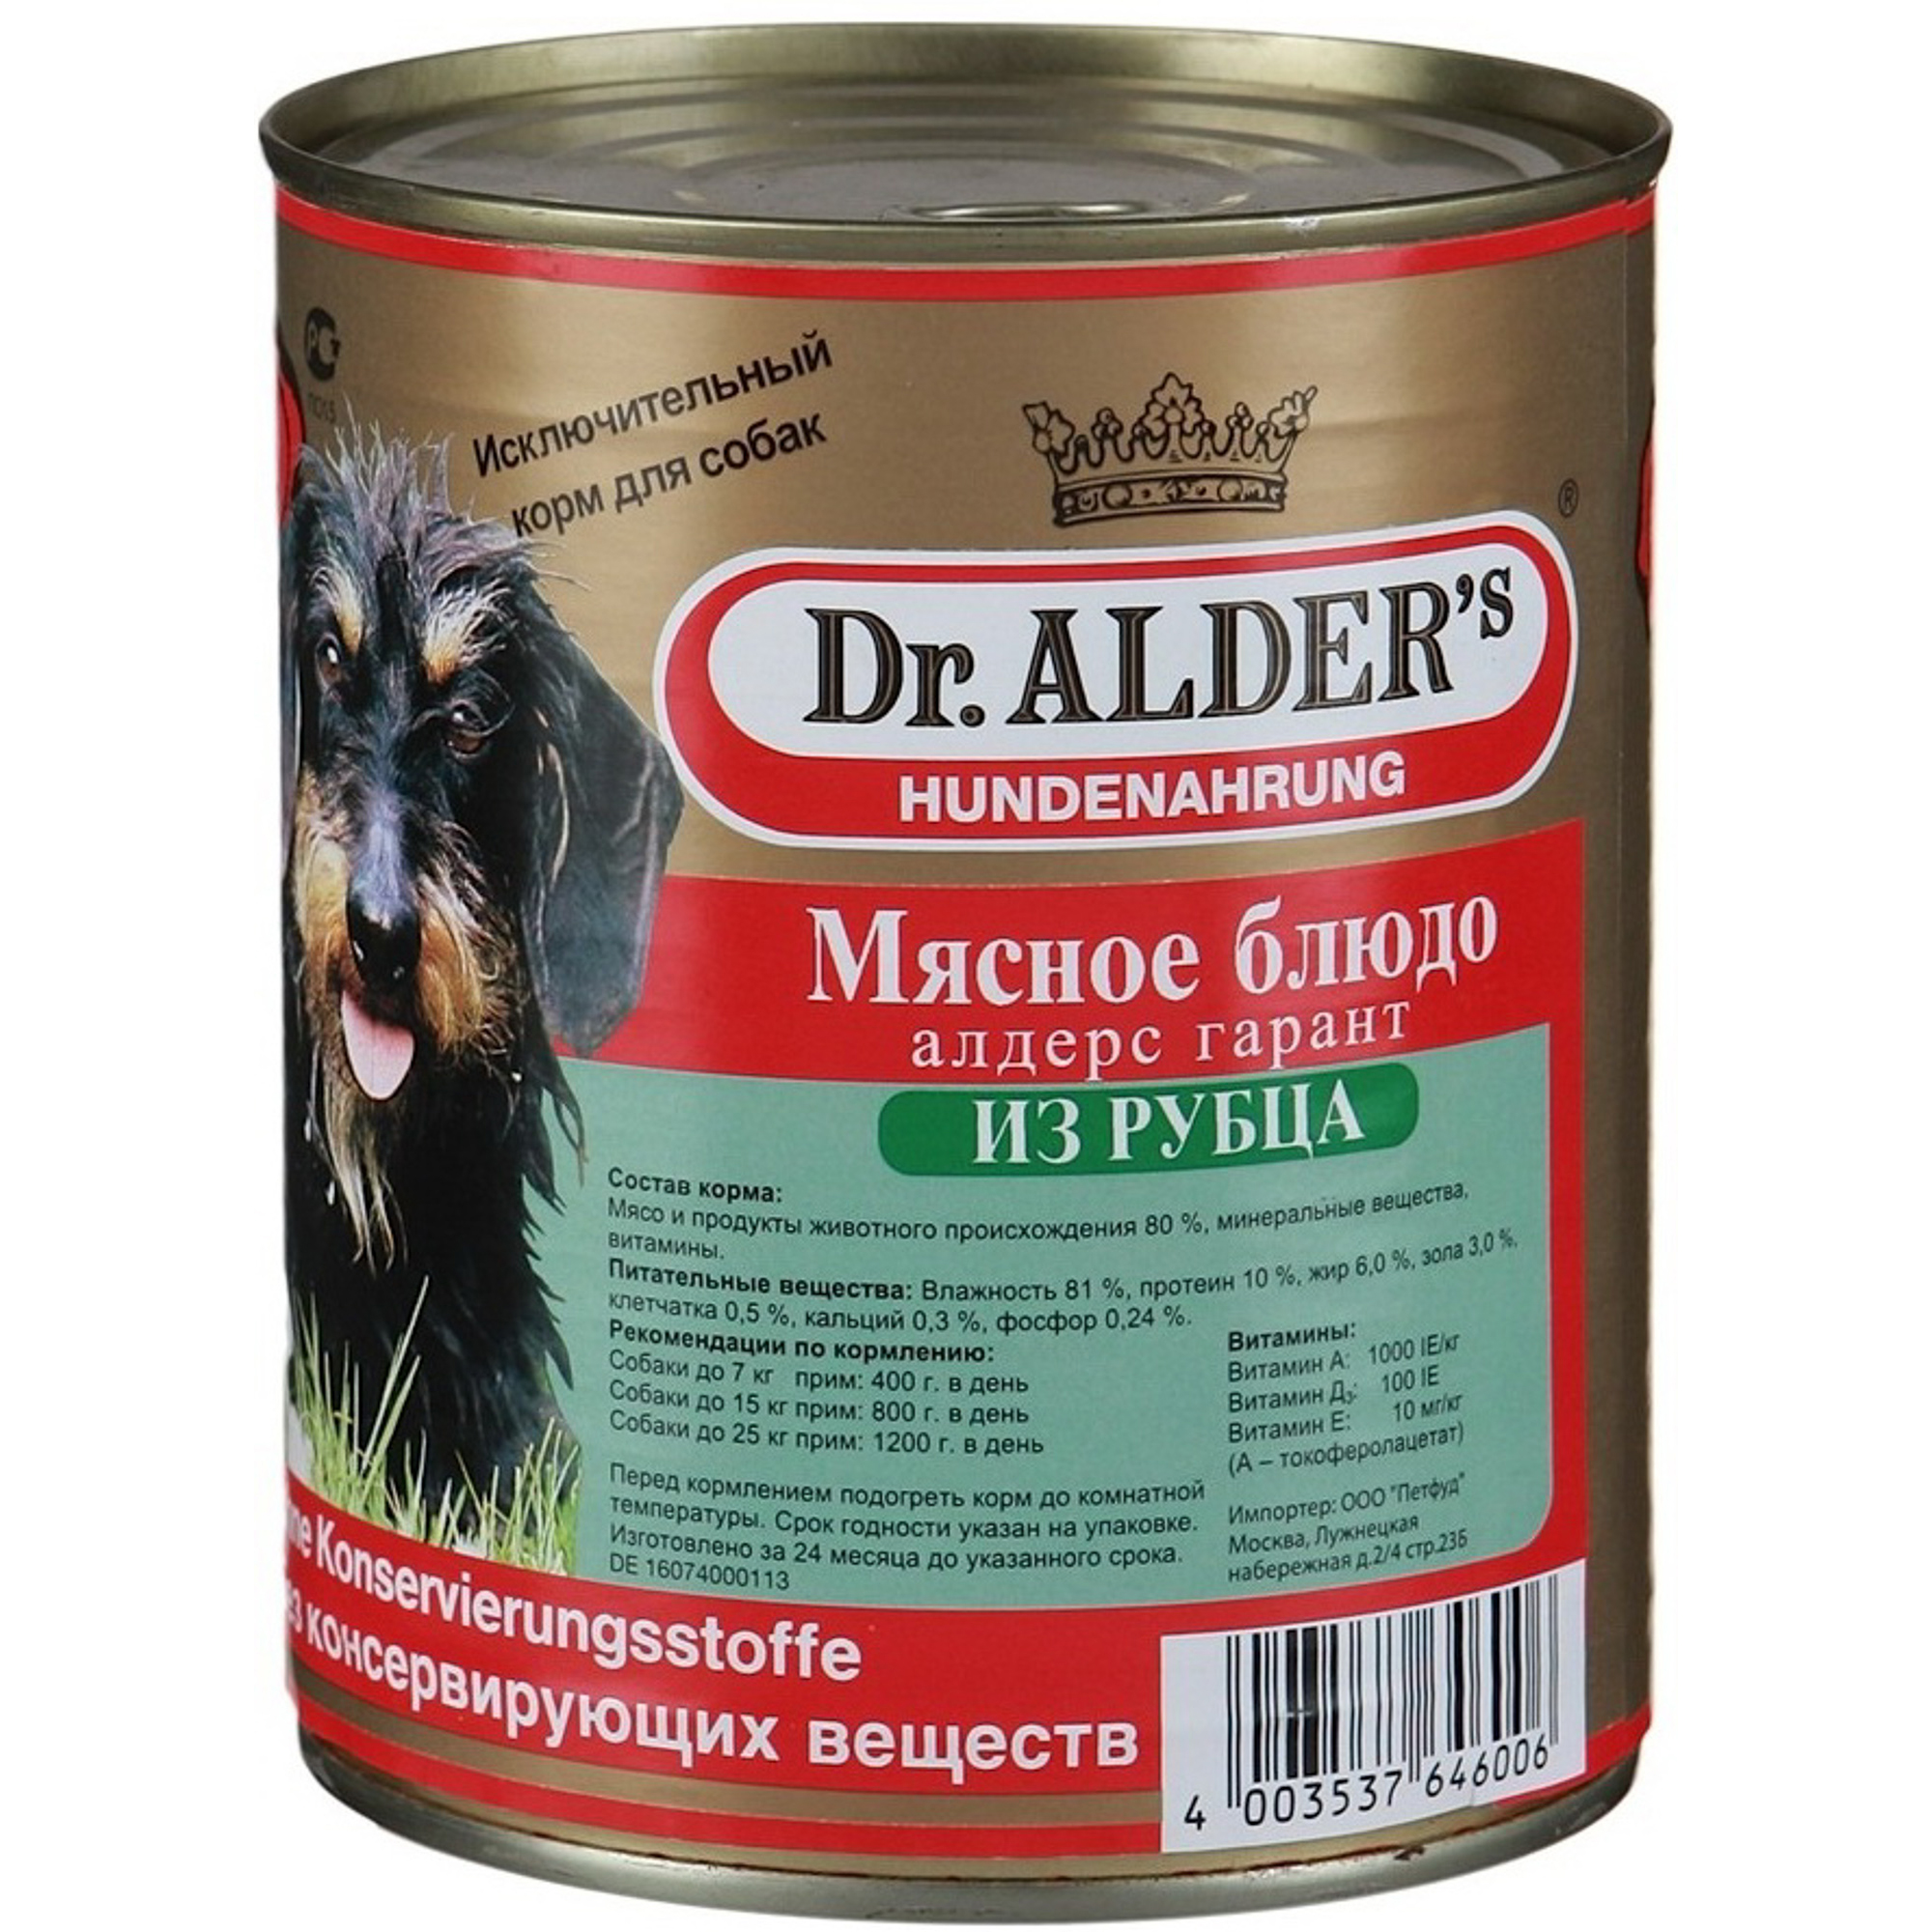 Корм для собак Dr. Alder's Алдерс Гарант 80% рубленного мяса рубец, сердце 750 г корм для собак dr alders алдерс гарант мясное блюдо с рубцом 400 г